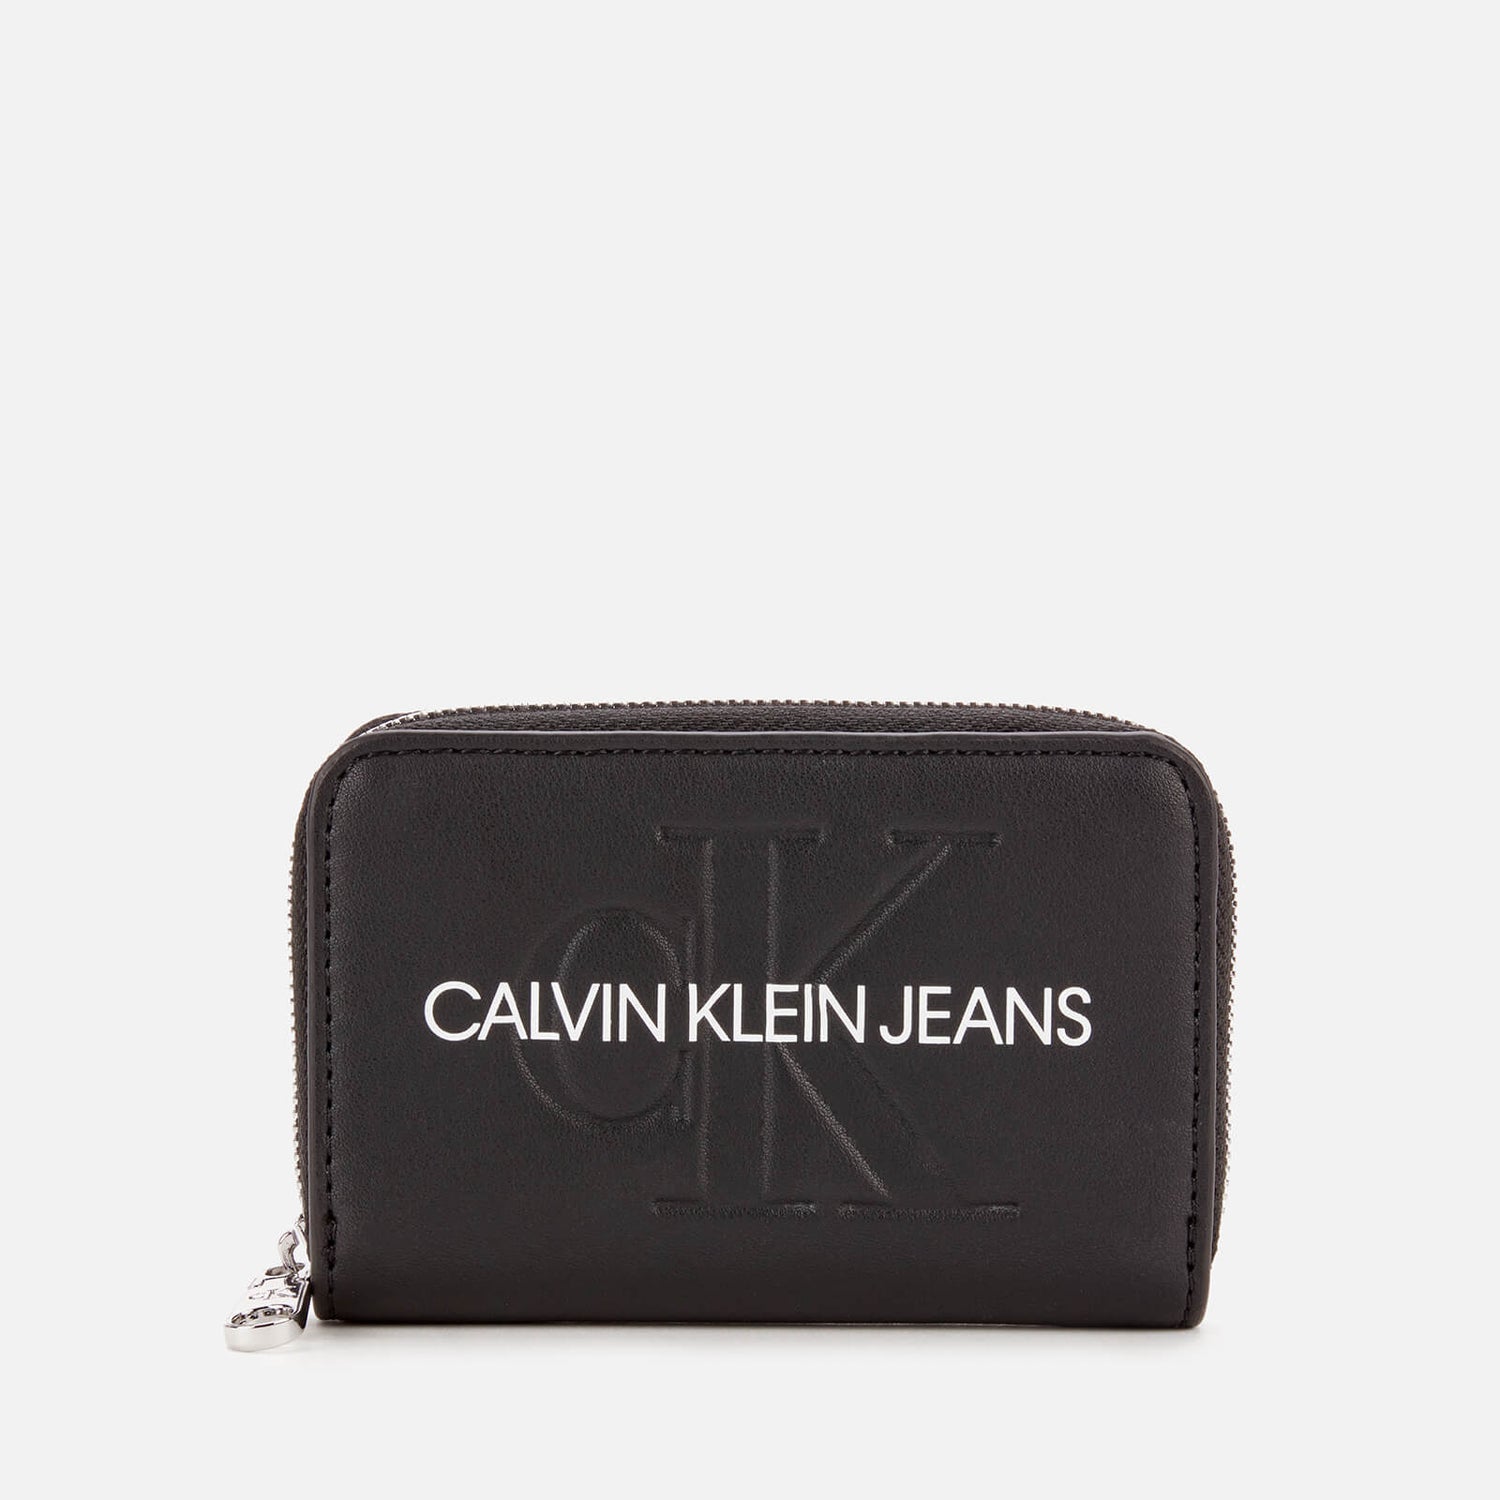 Calvin Klein Jeans Women's Accordion Zip Around - Black